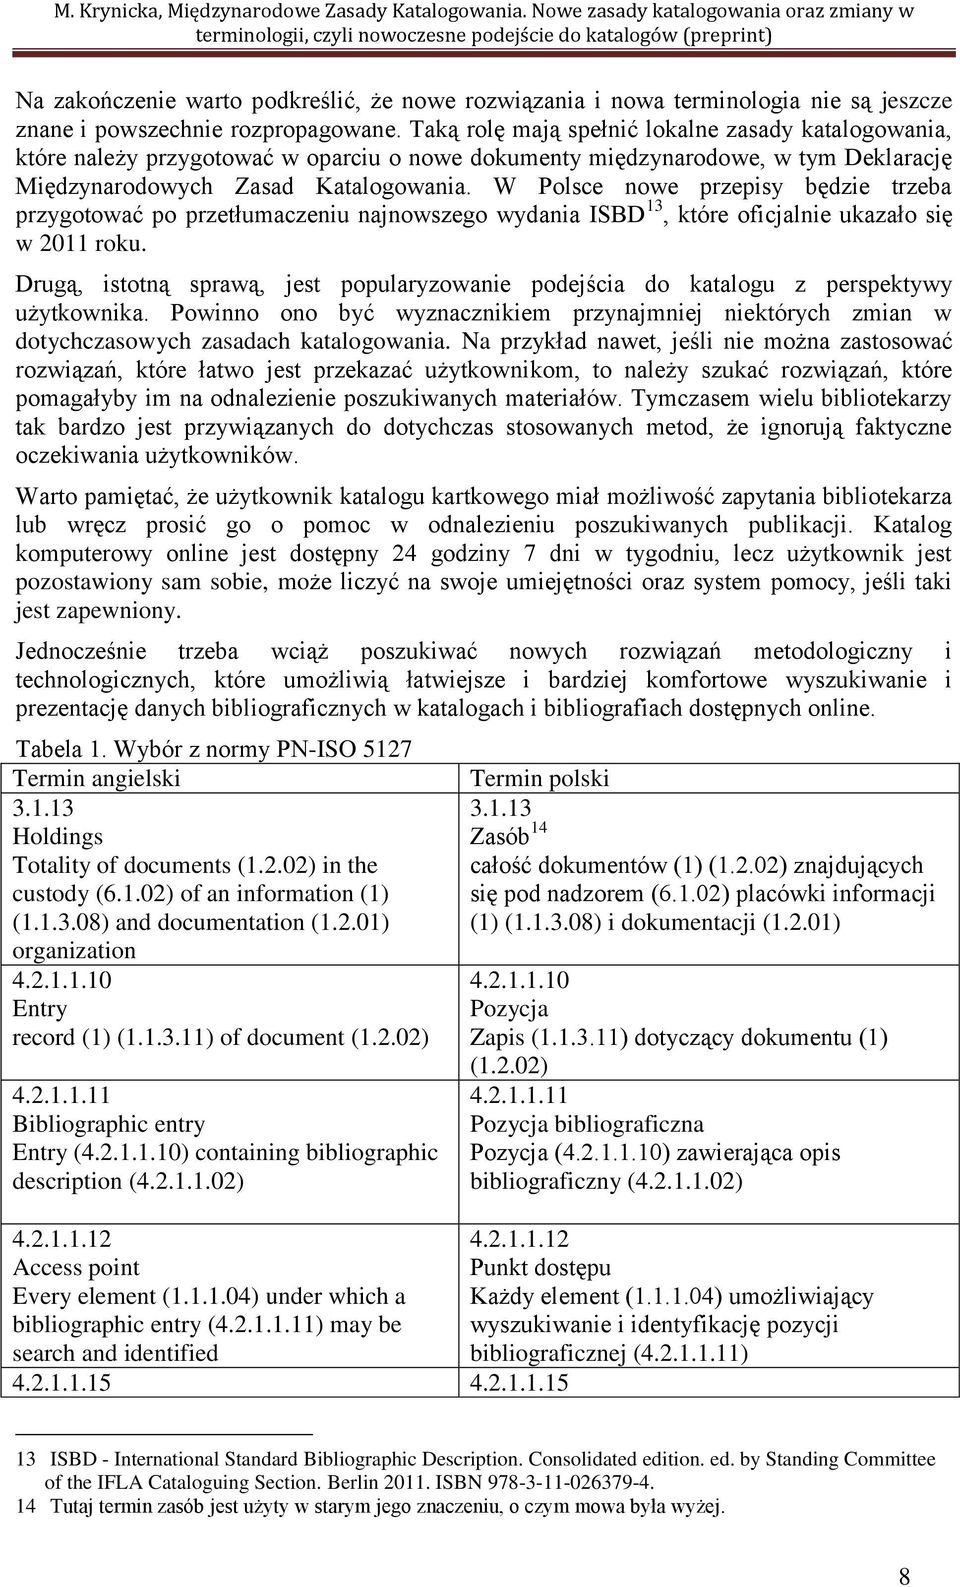 W Polsce nowe przepisy będzie trzeba przygotować po przetłumaczeniu najnowszego wydania ISBD 13, które oficjalnie ukazało się w 2011 roku.